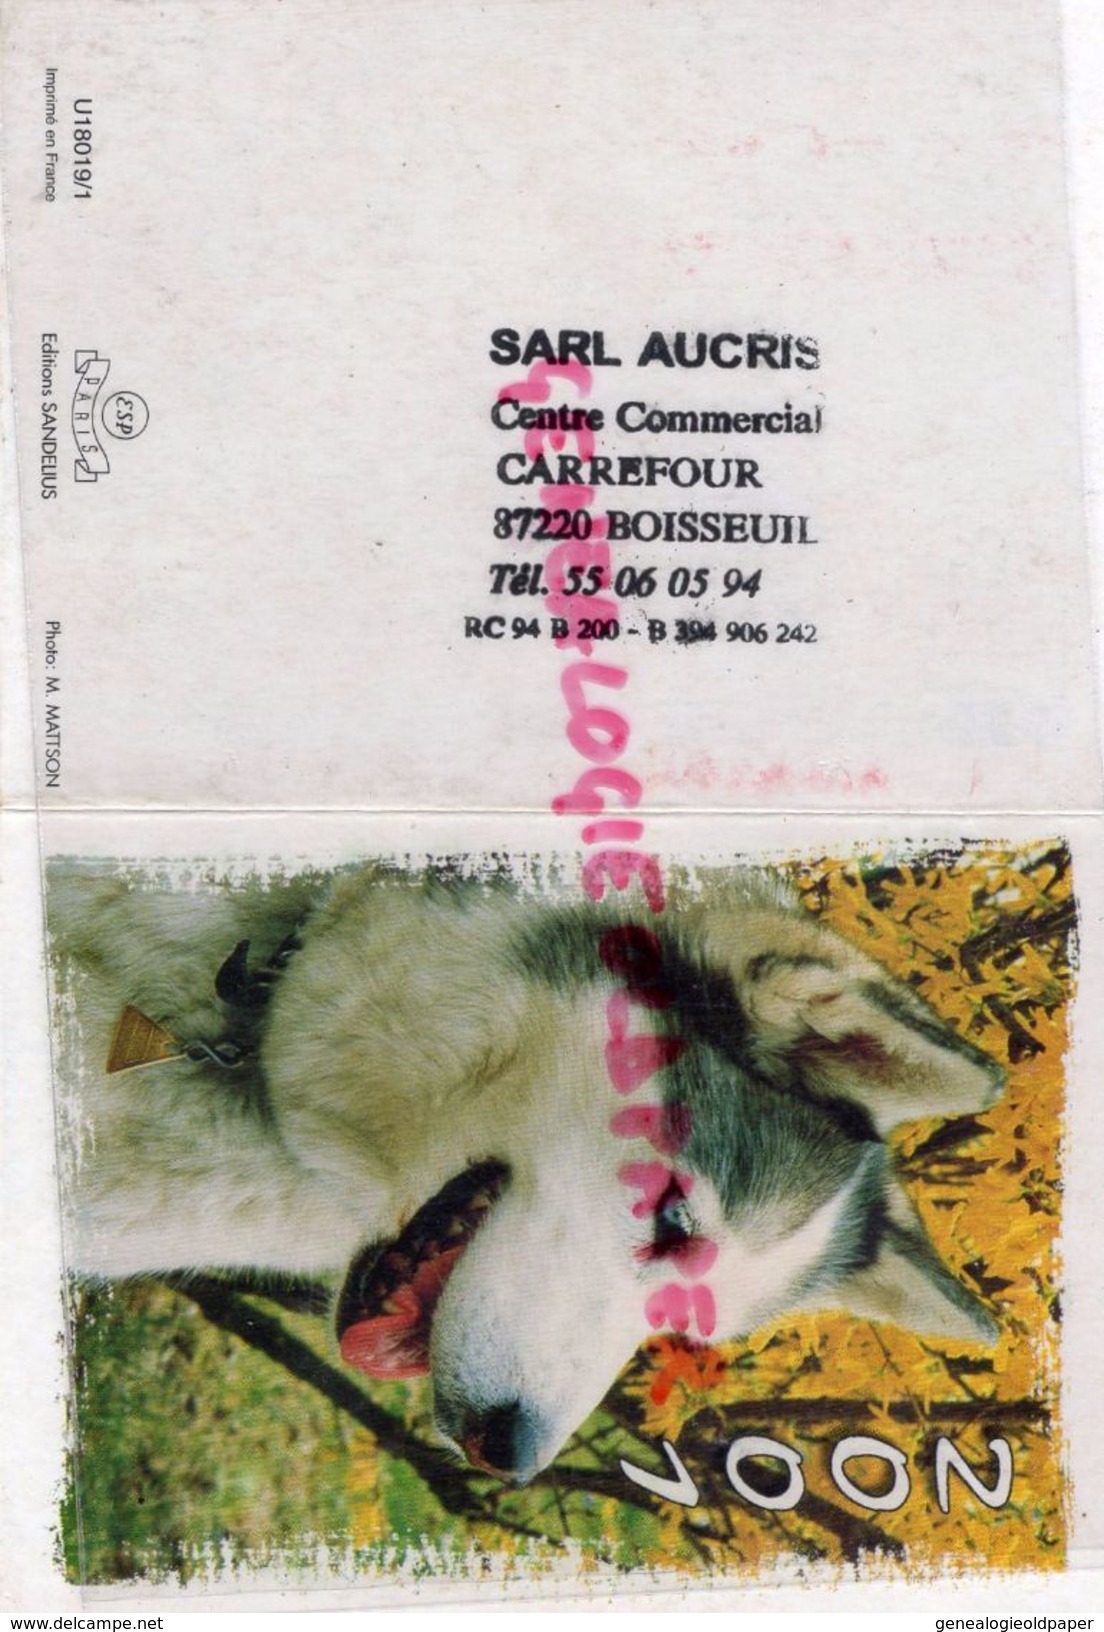 87 - BOISSEUIL - PETIT CALENDRIER 2001- CACHET SARL AUCRIS - CARREFOUR CENTRE COMMERCIAL - CHIEN HUSKY - Groot Formaat: 2001-...